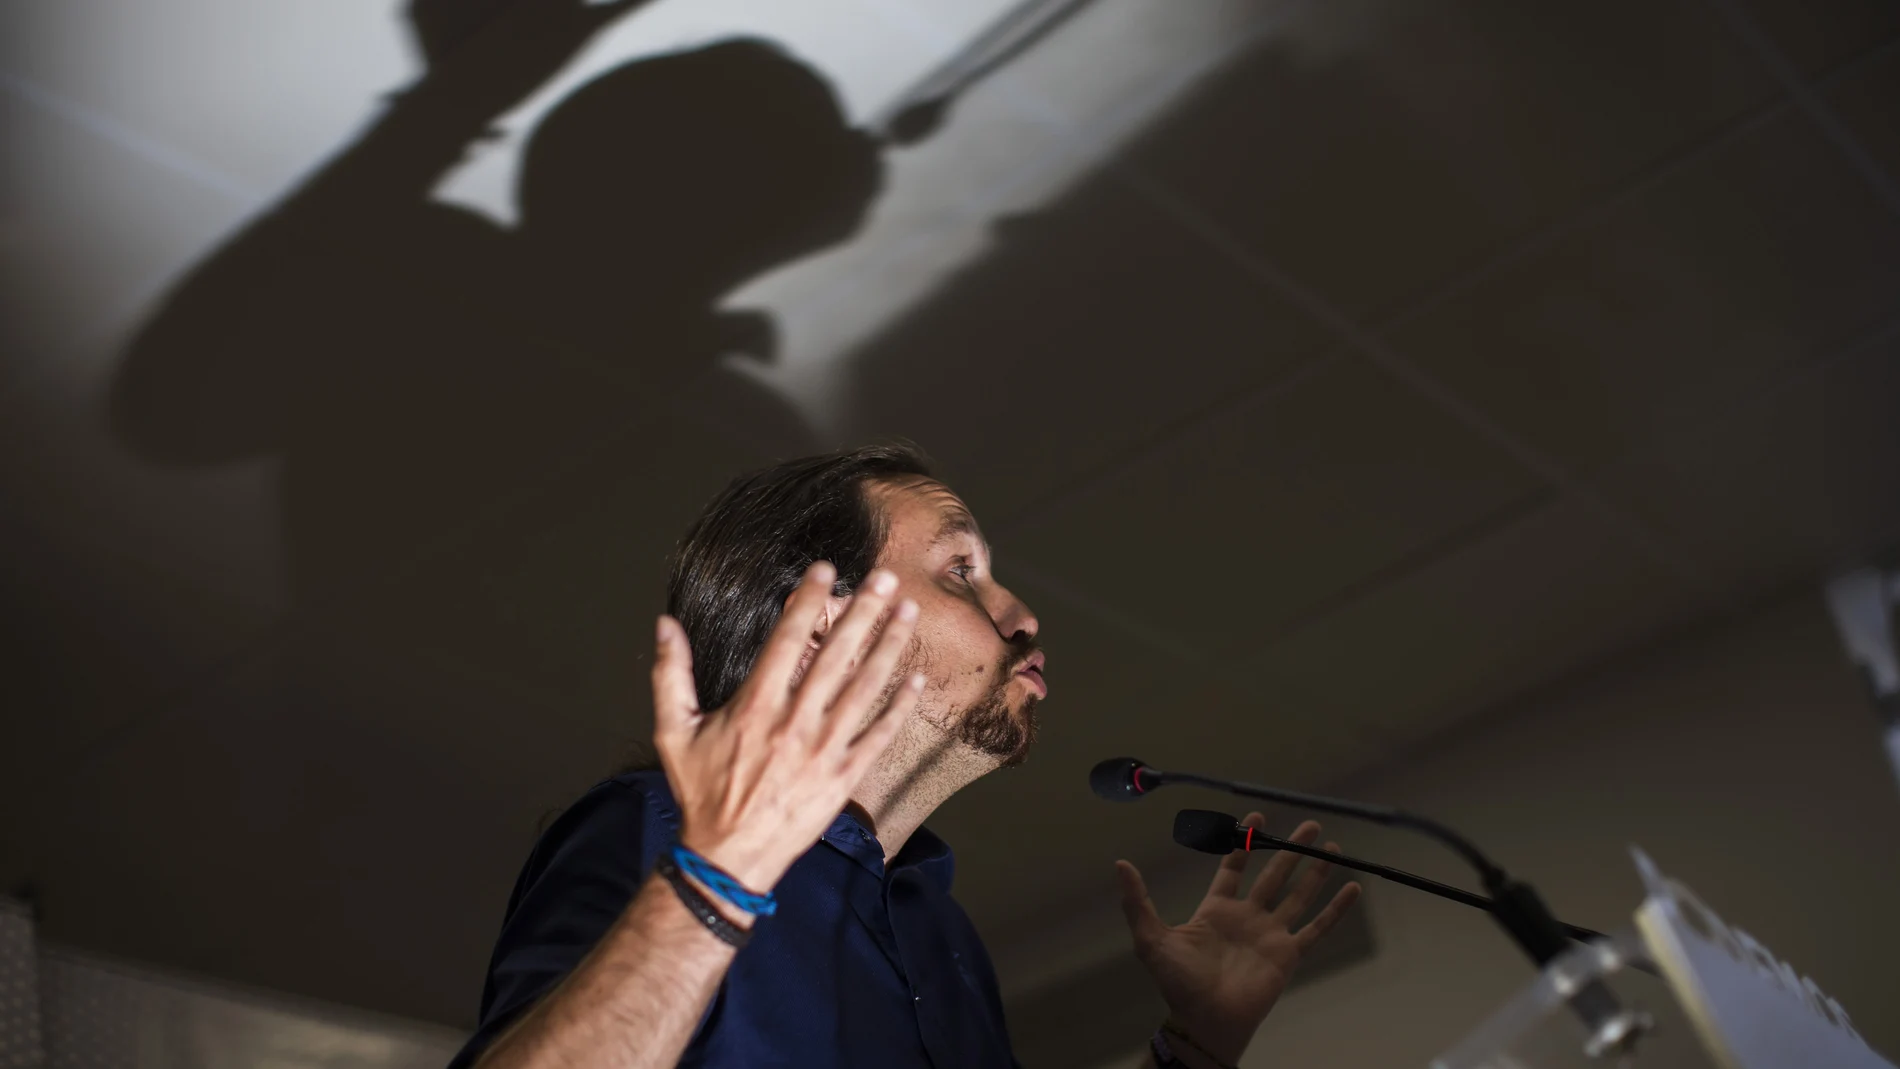 Rueda de Prensa del líder de Podemos Pablo Iglesias después del periodo vacacional© Alberto R. Roldan / La Razon24 08 2015